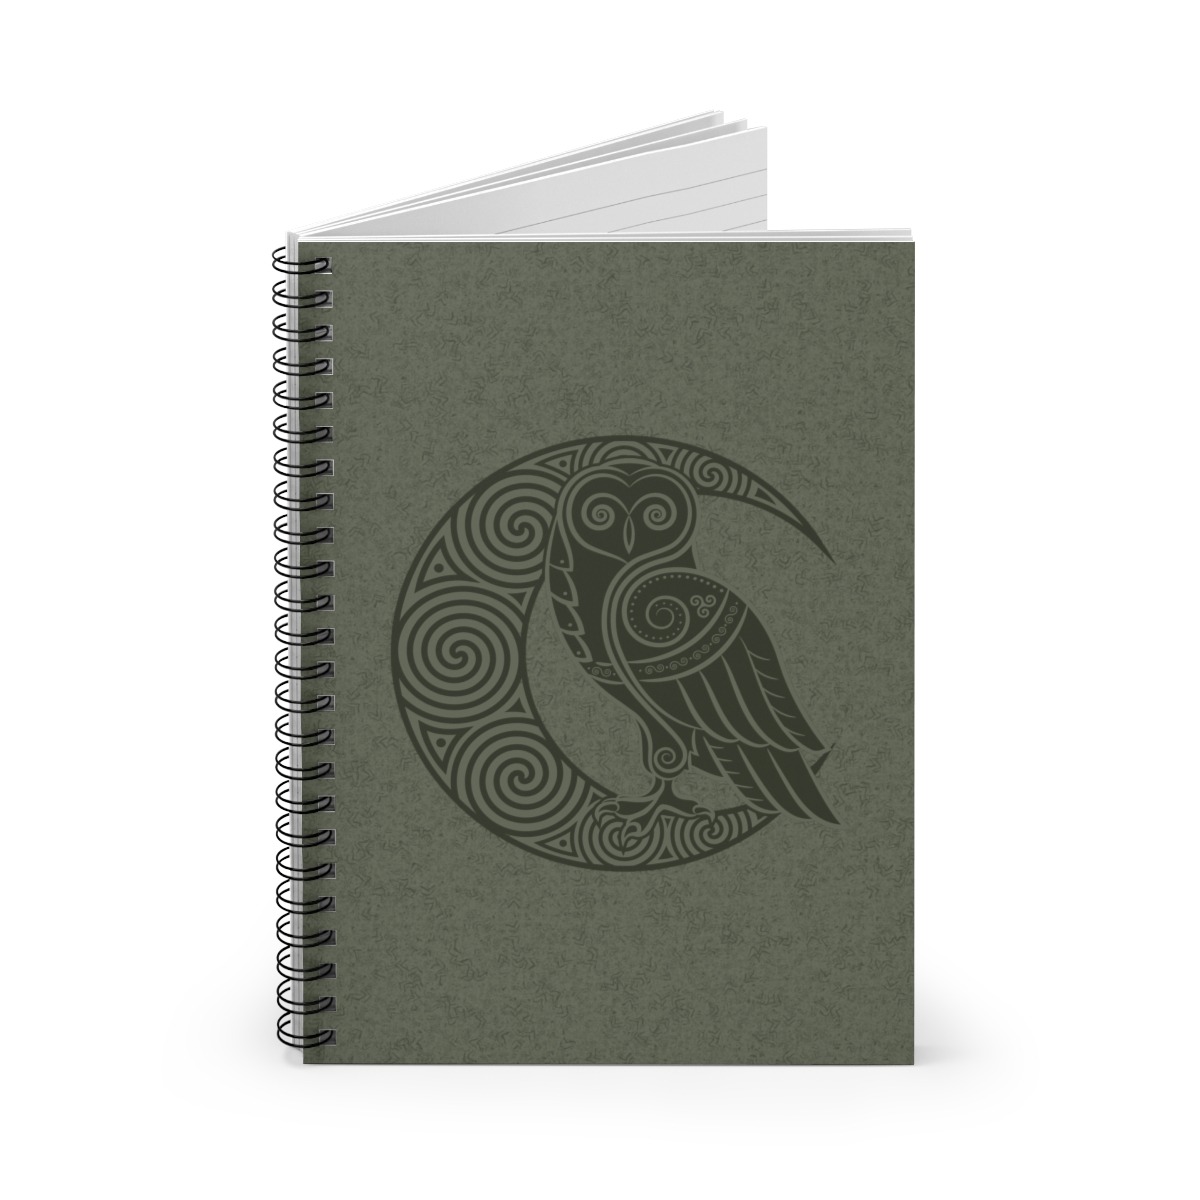 Green Owl Crescent Moon Spiral Notebook